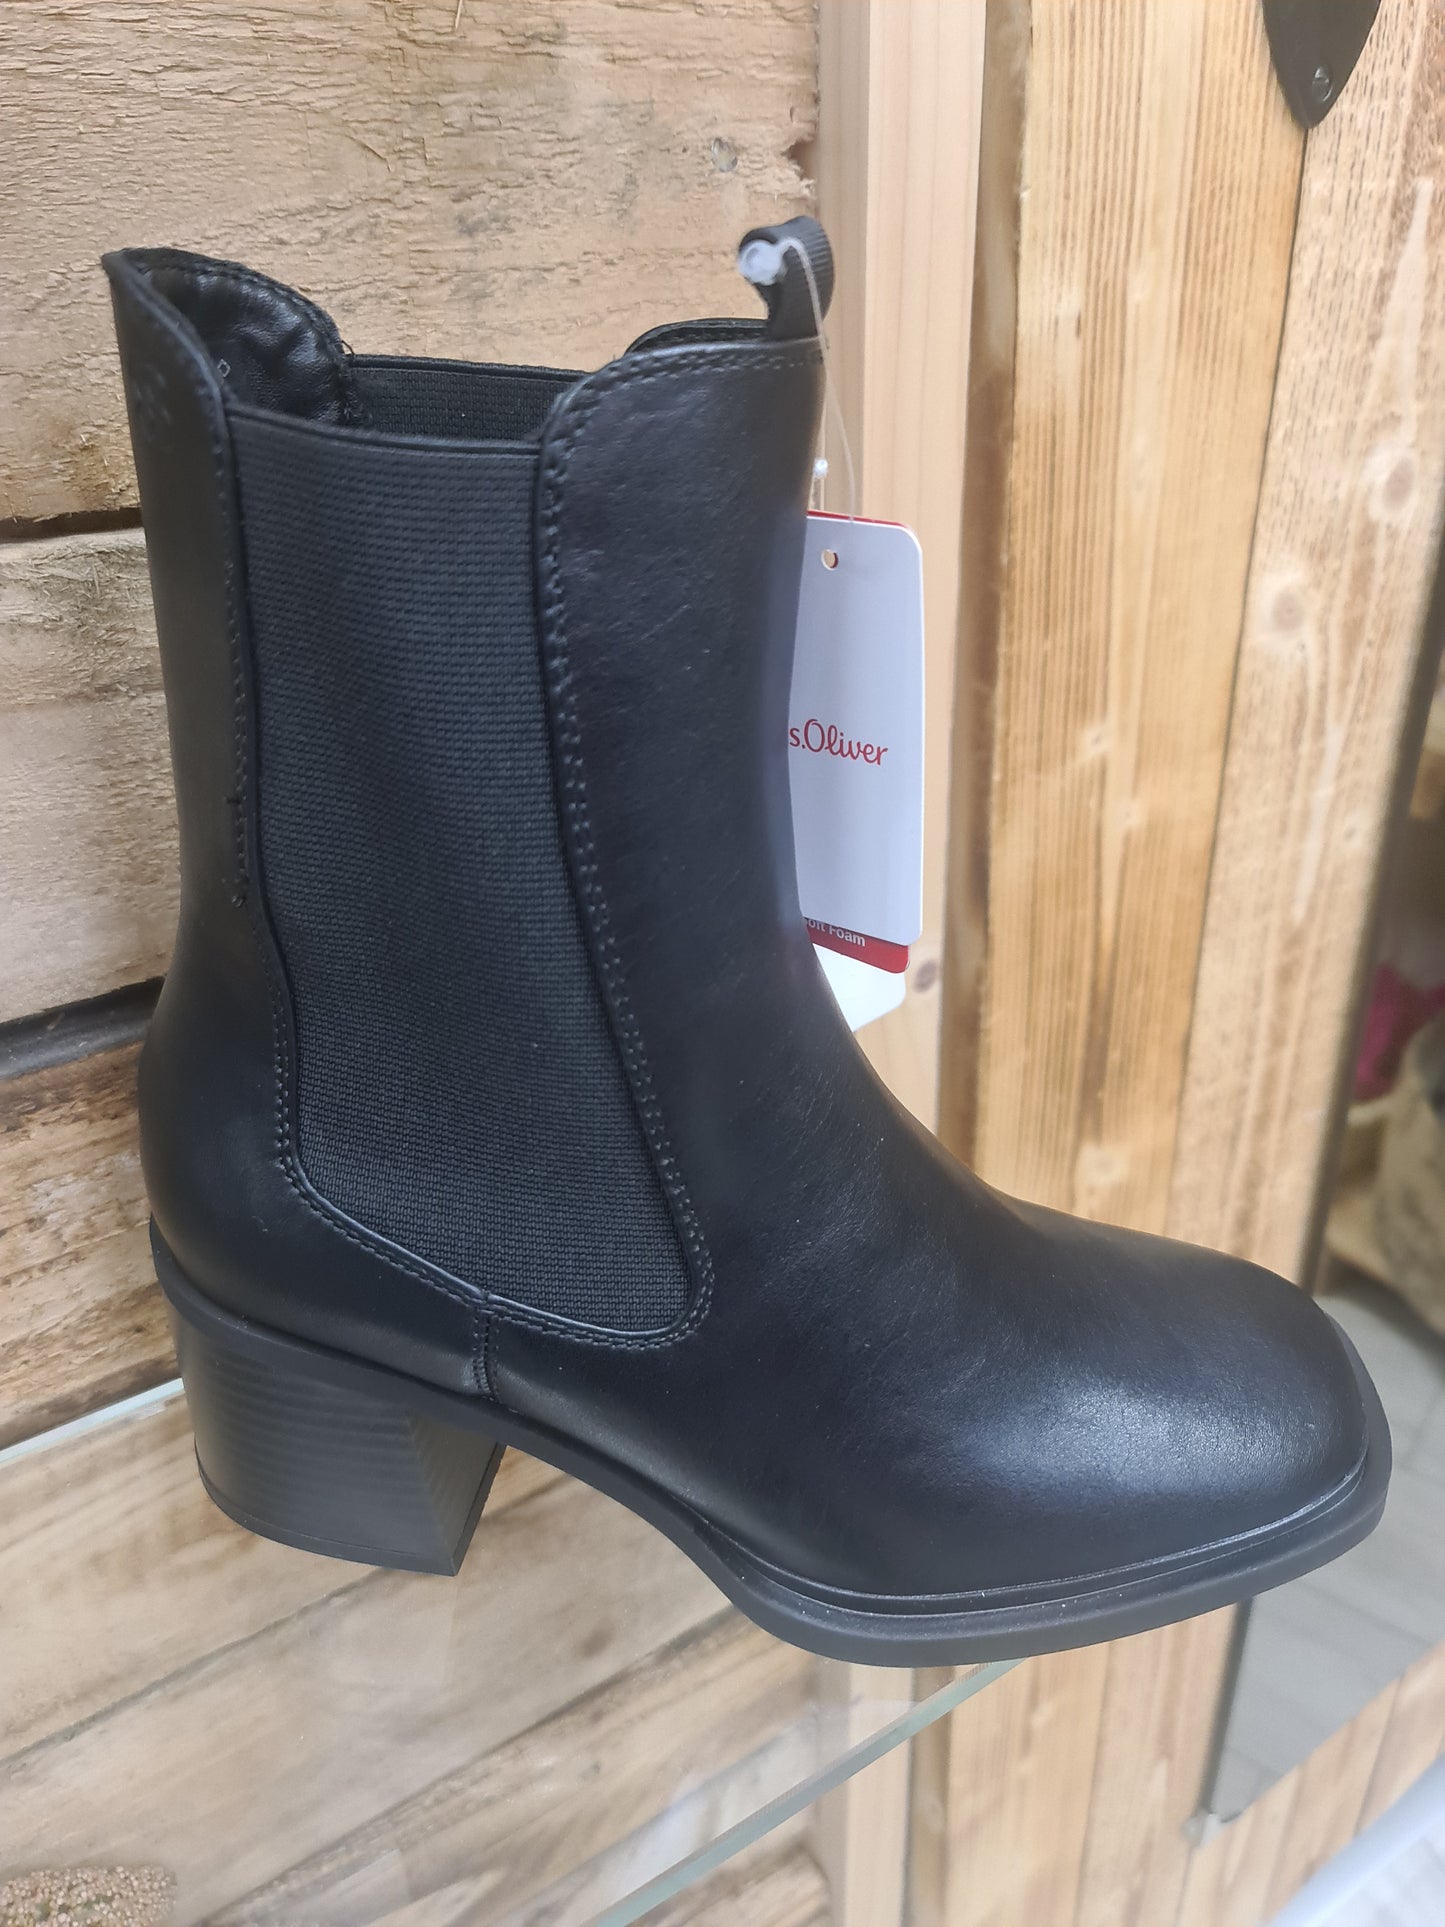 S Oliver Black Boots 5-25306-29 001